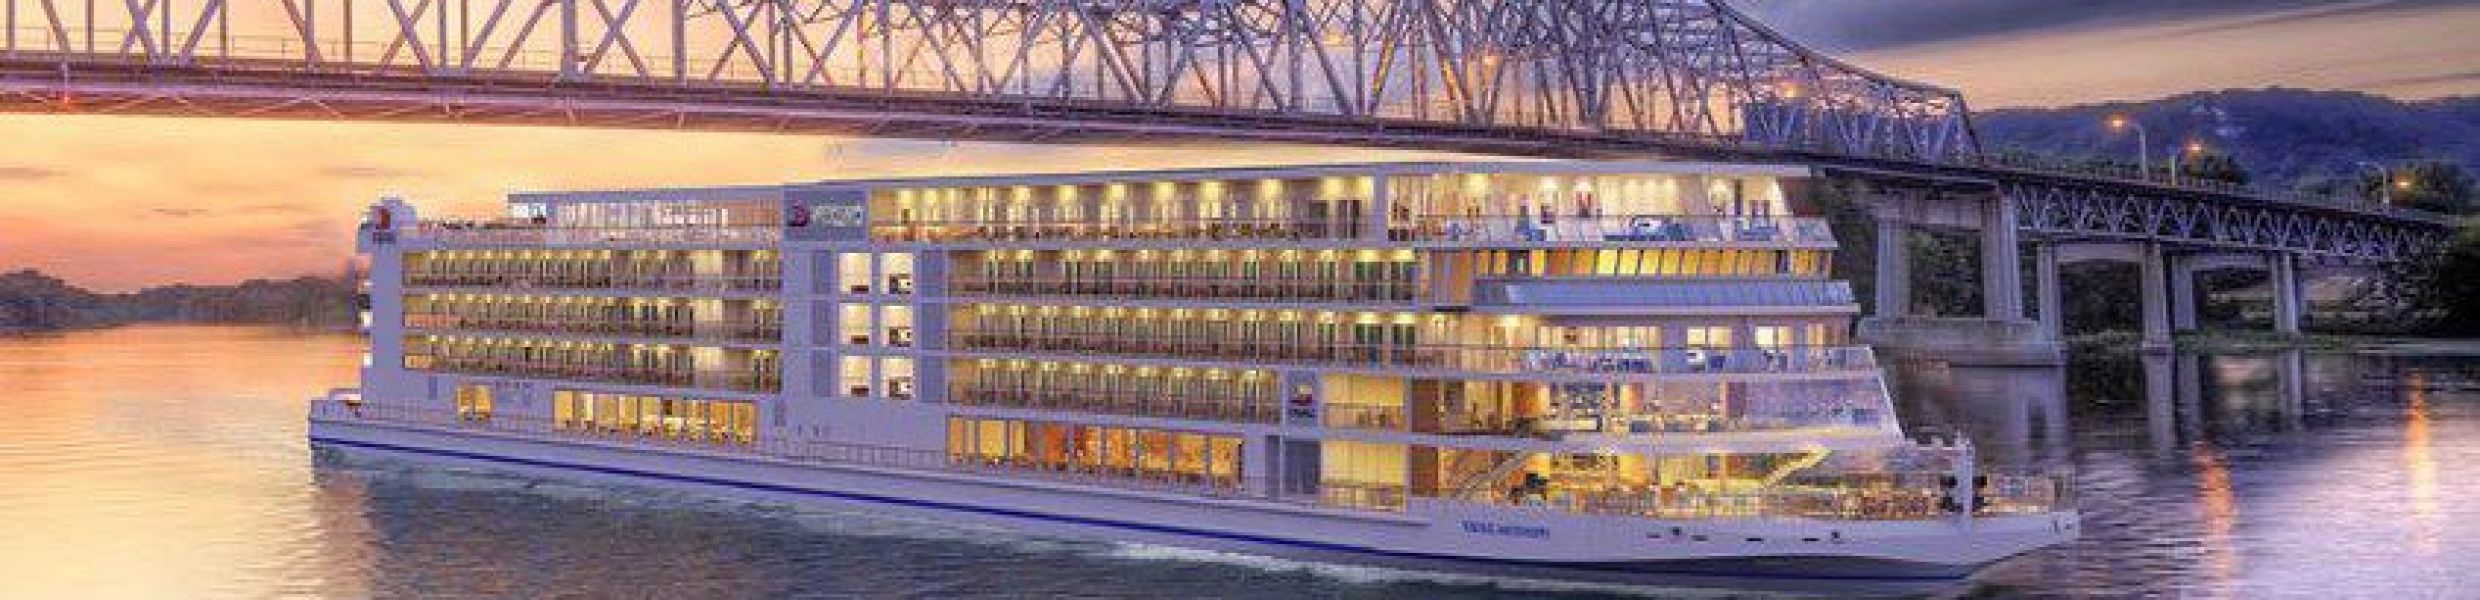 Viking Mississippi USA River Cruises